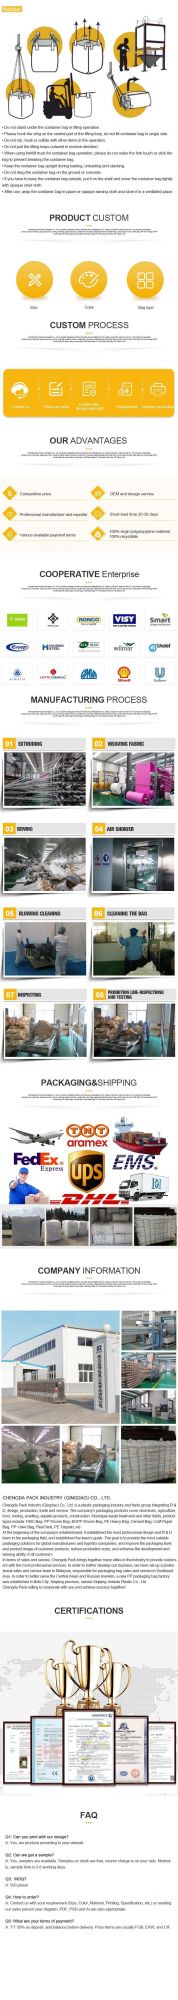 China Jumbo Packaging Polypropylene Garden Jumbo Bag Skip Big Recycle Jumbo Bag Supplier